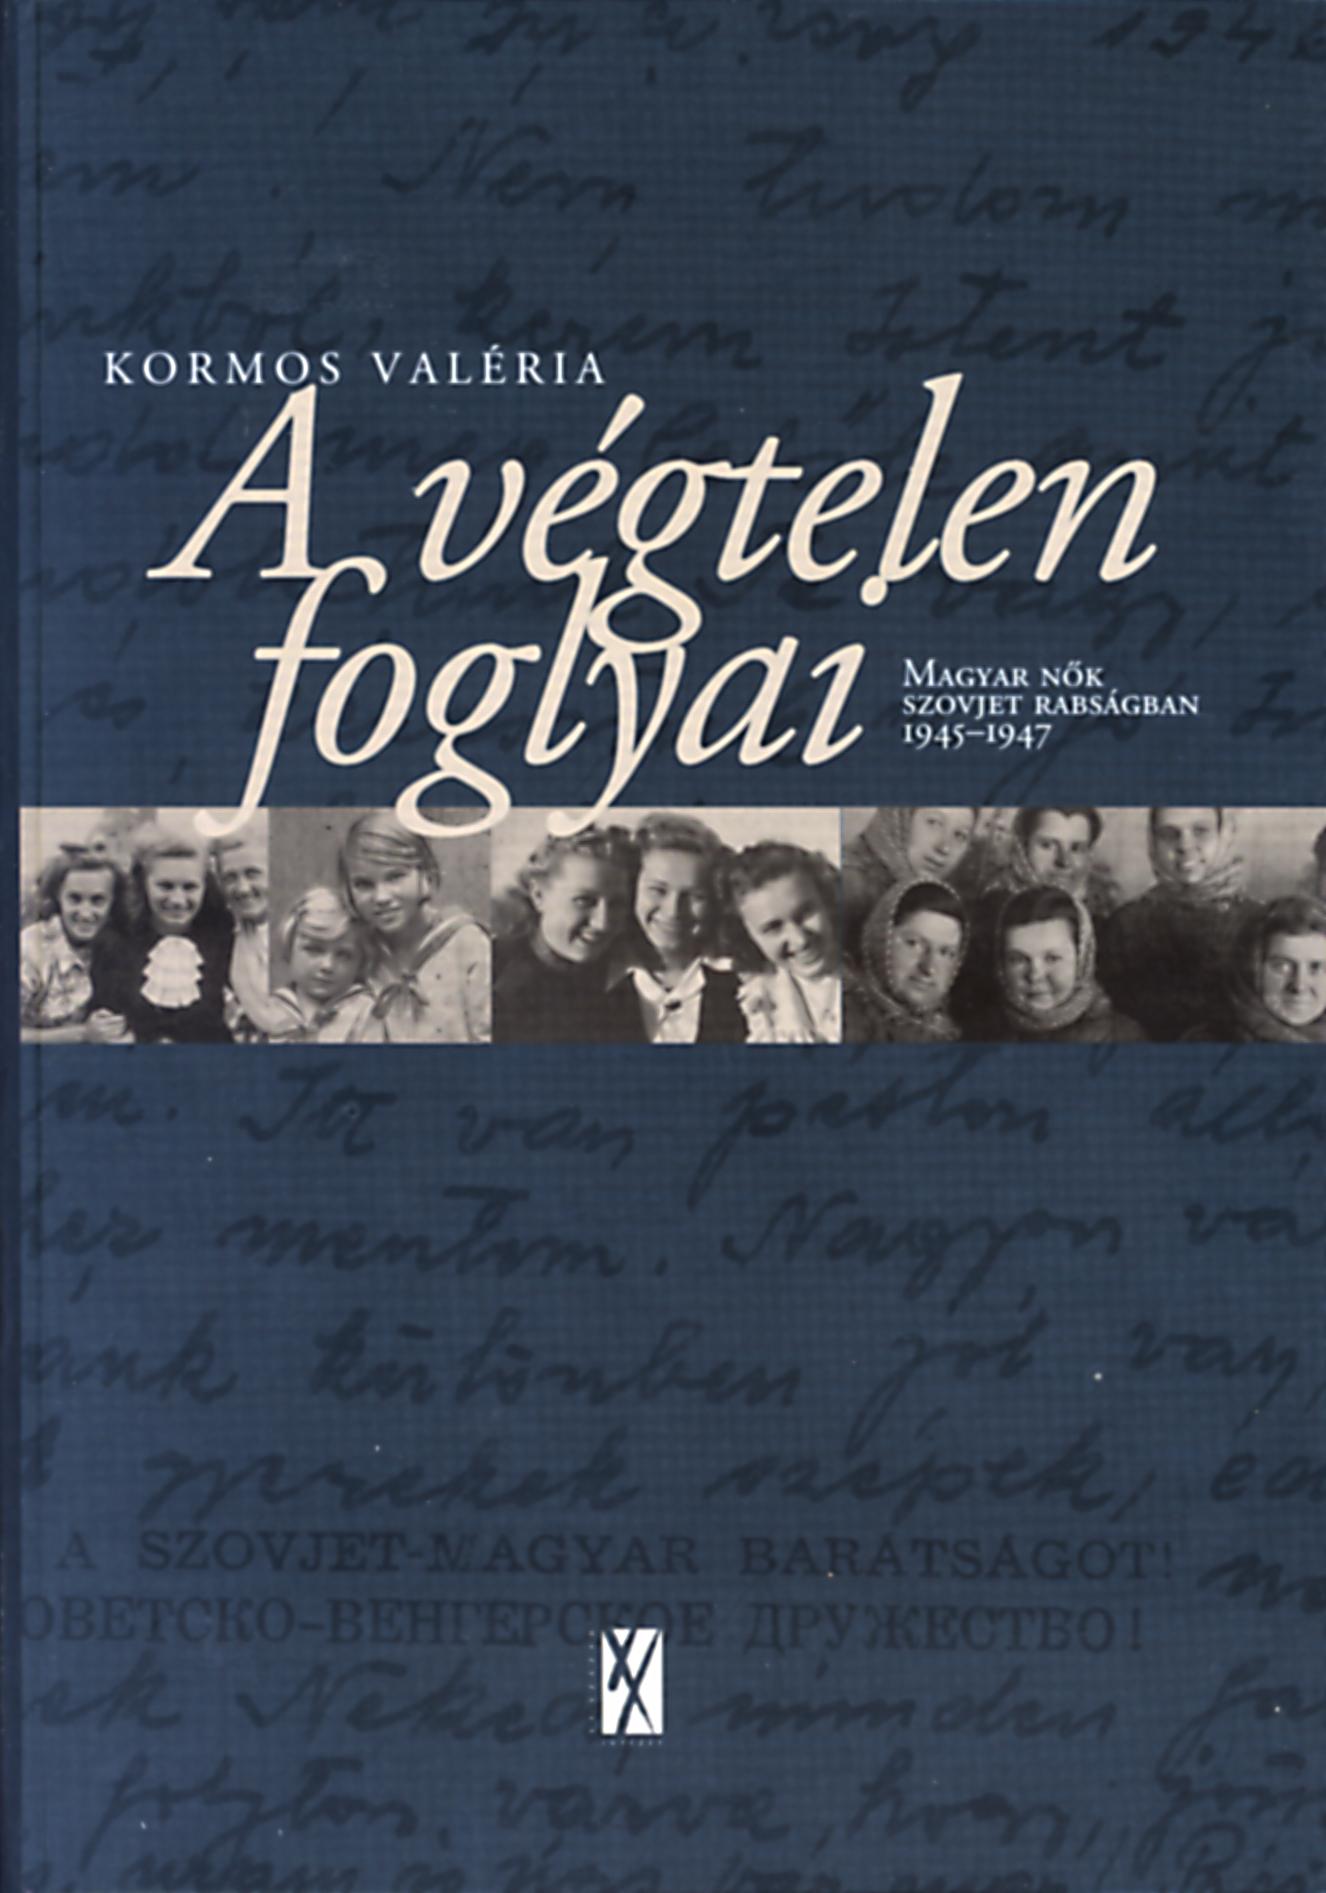 A végtelen foglyai – Magyar nők szovjet rabságban 1945-1947